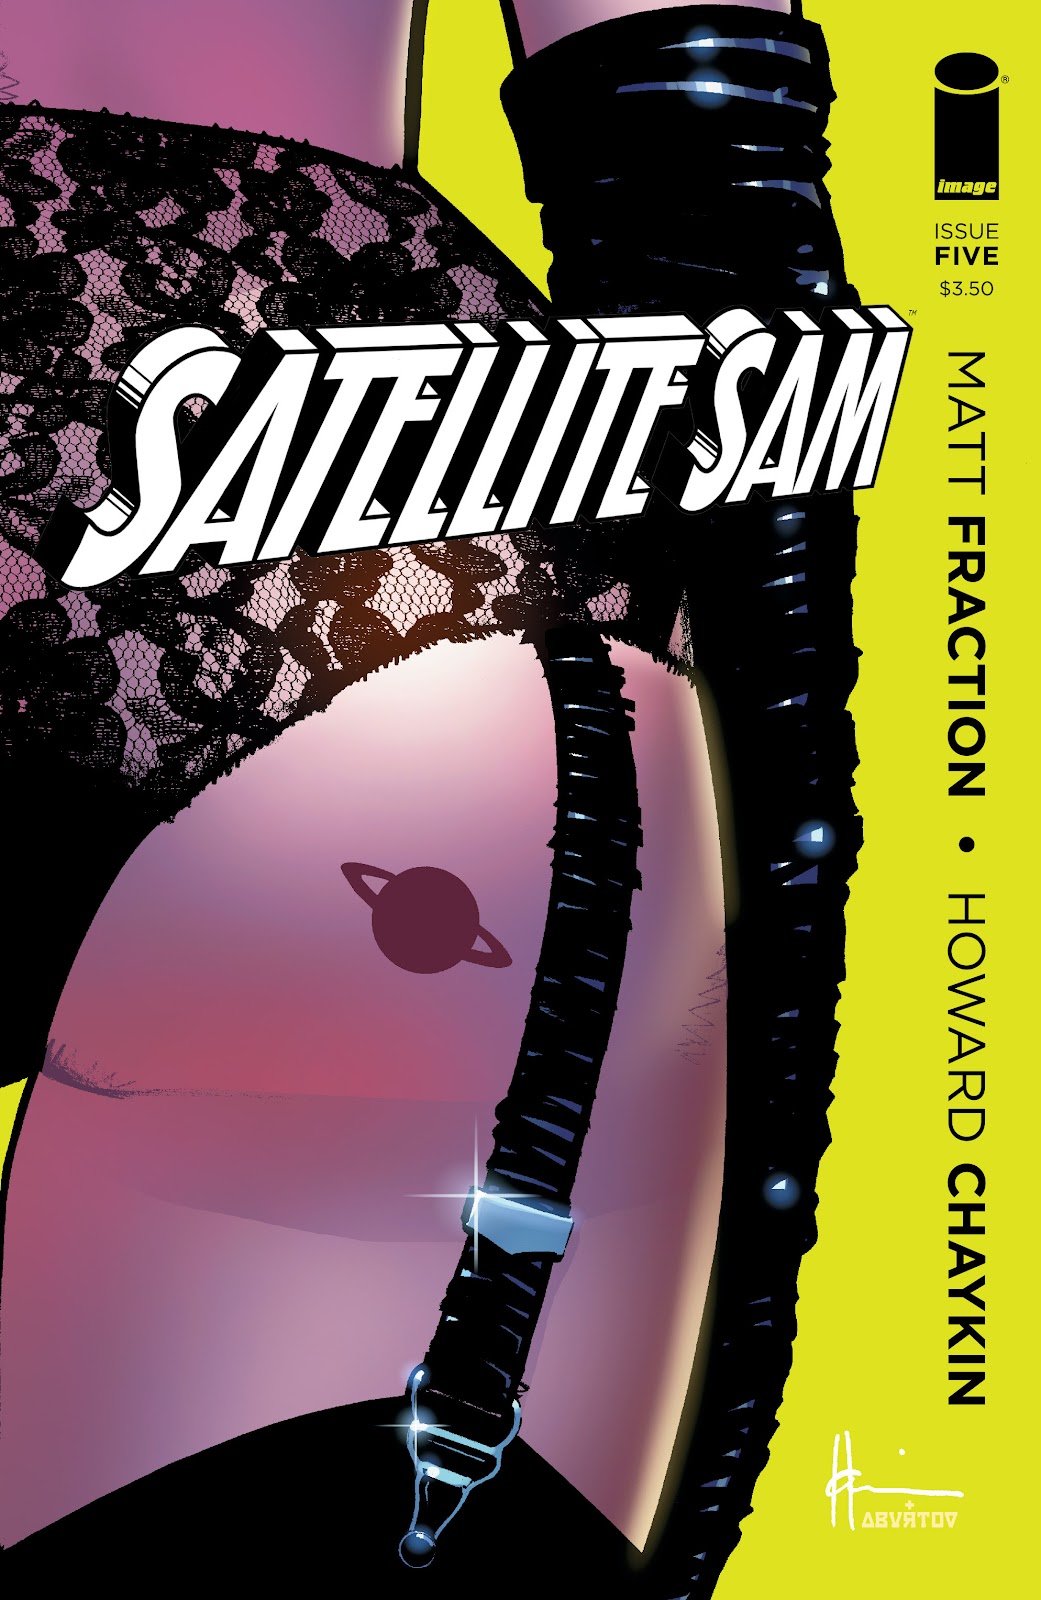 Satellite Sam issue 5 - Page 1